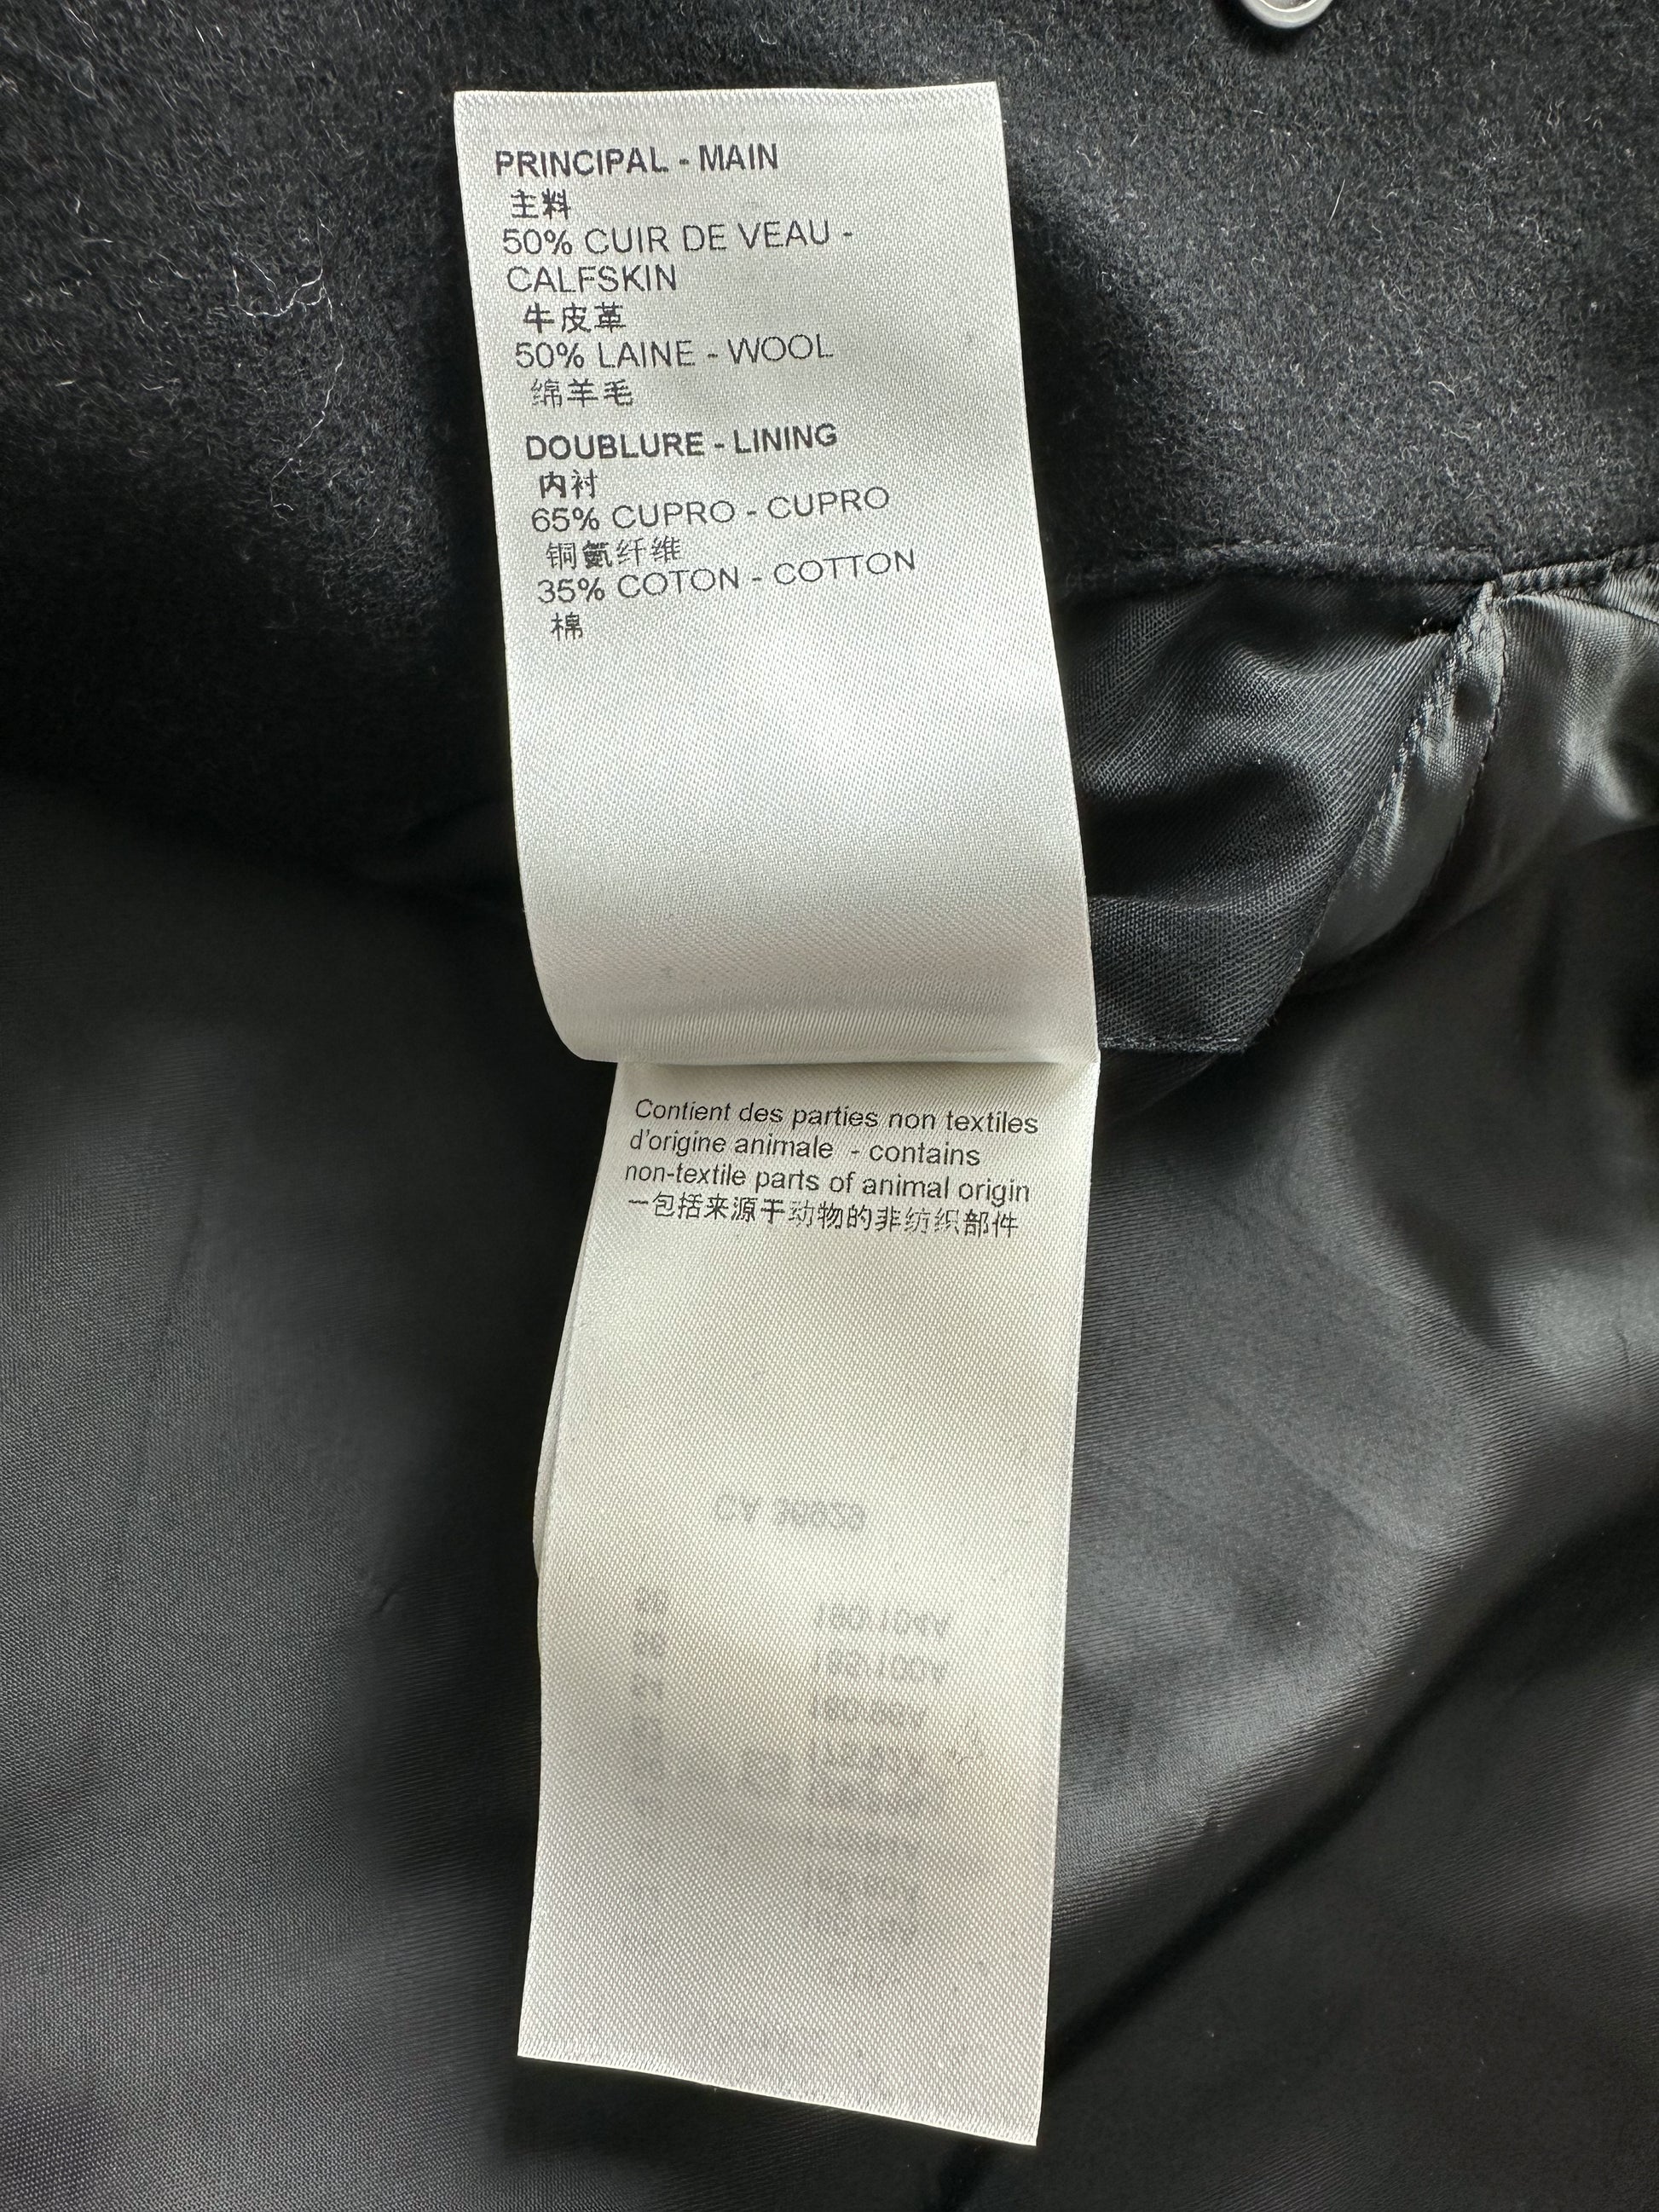 Pre-owned Louis Vuitton Wool Coat In Black